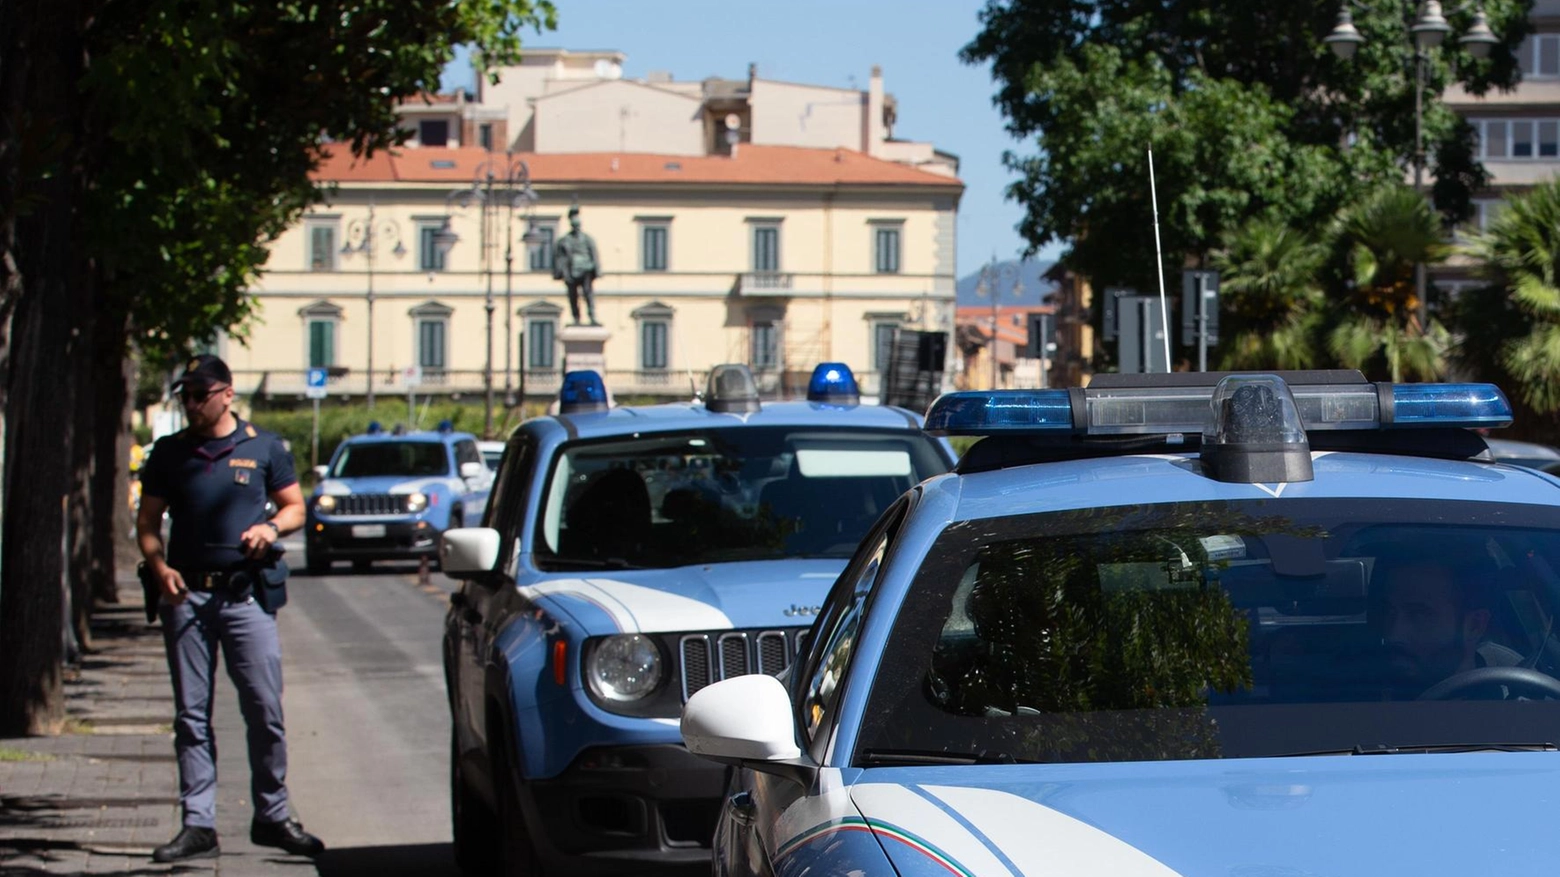 Un pregiudicato di 52 anni è stato arrestato a Rozzano per aver violato il regime di libertà vigilata, con diversi precedenti penali tra cui tentato omicidio e rapina.